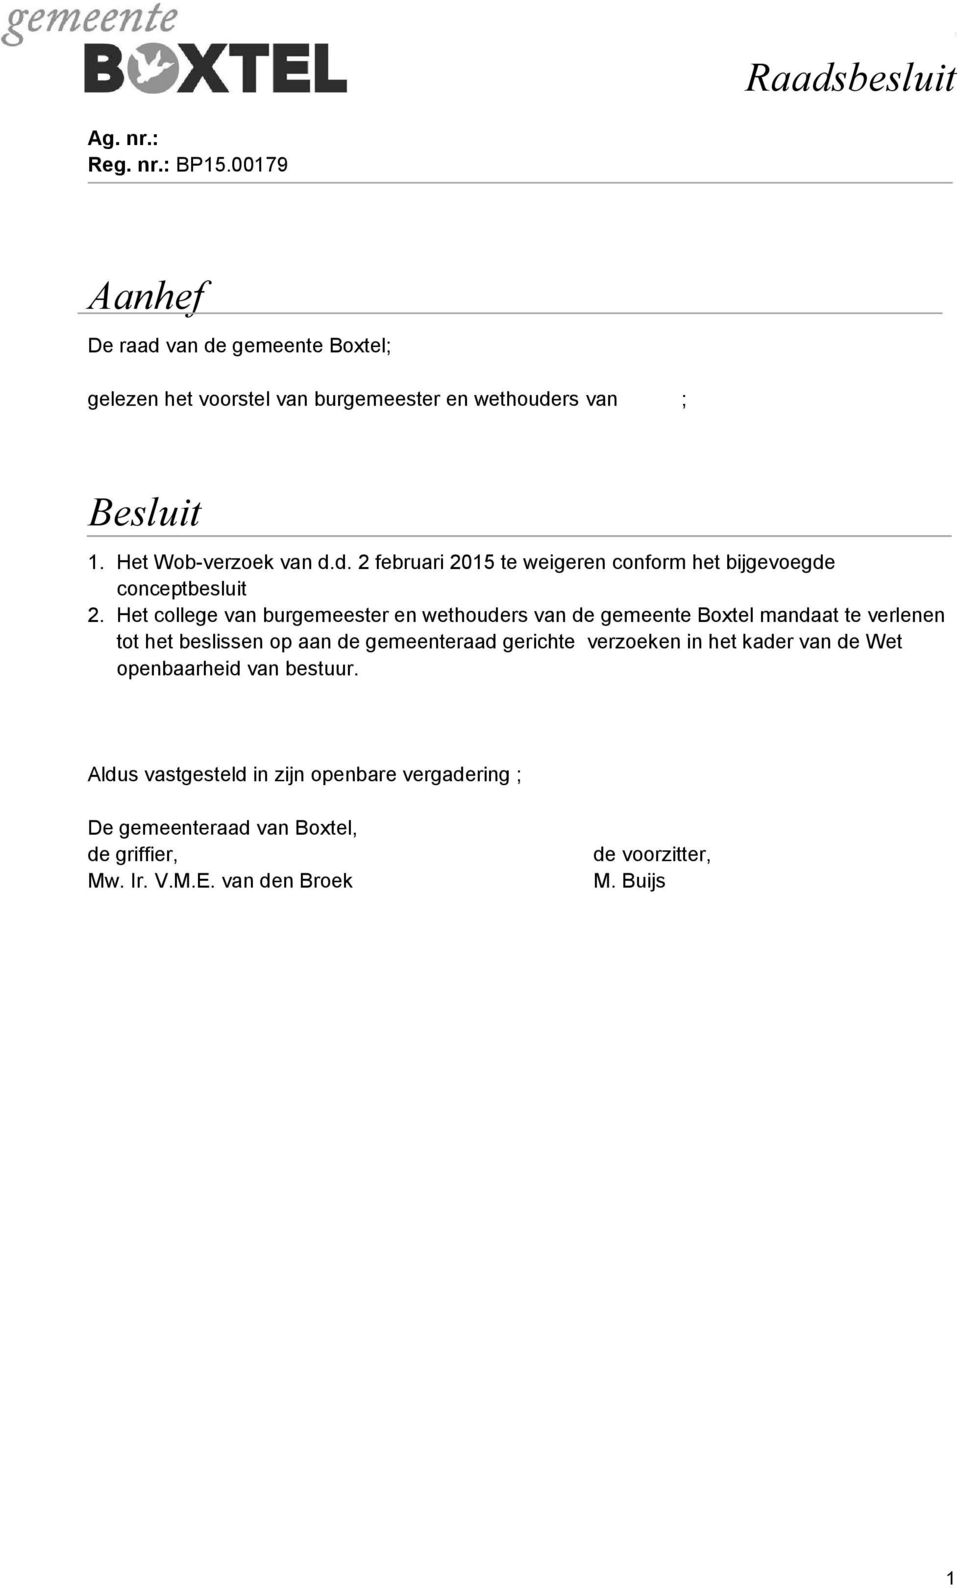 Het college van burgemeester en wethouders van de gemeente Boxtel mandaat te verlenen tot het beslissen op aan de gemeenteraad gerichte